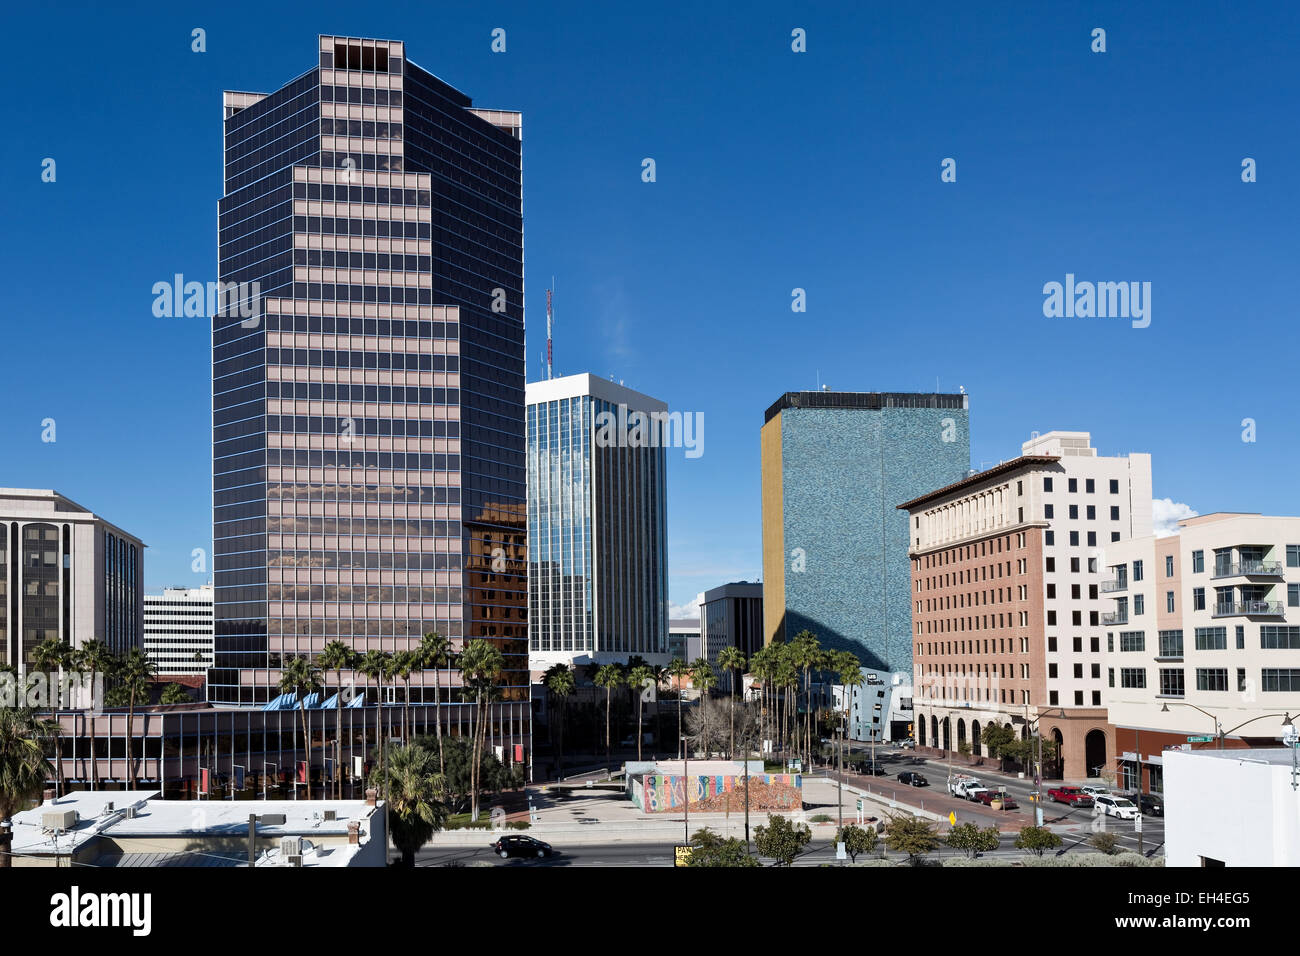 Downtown Tucson, Arizona Stock Photo